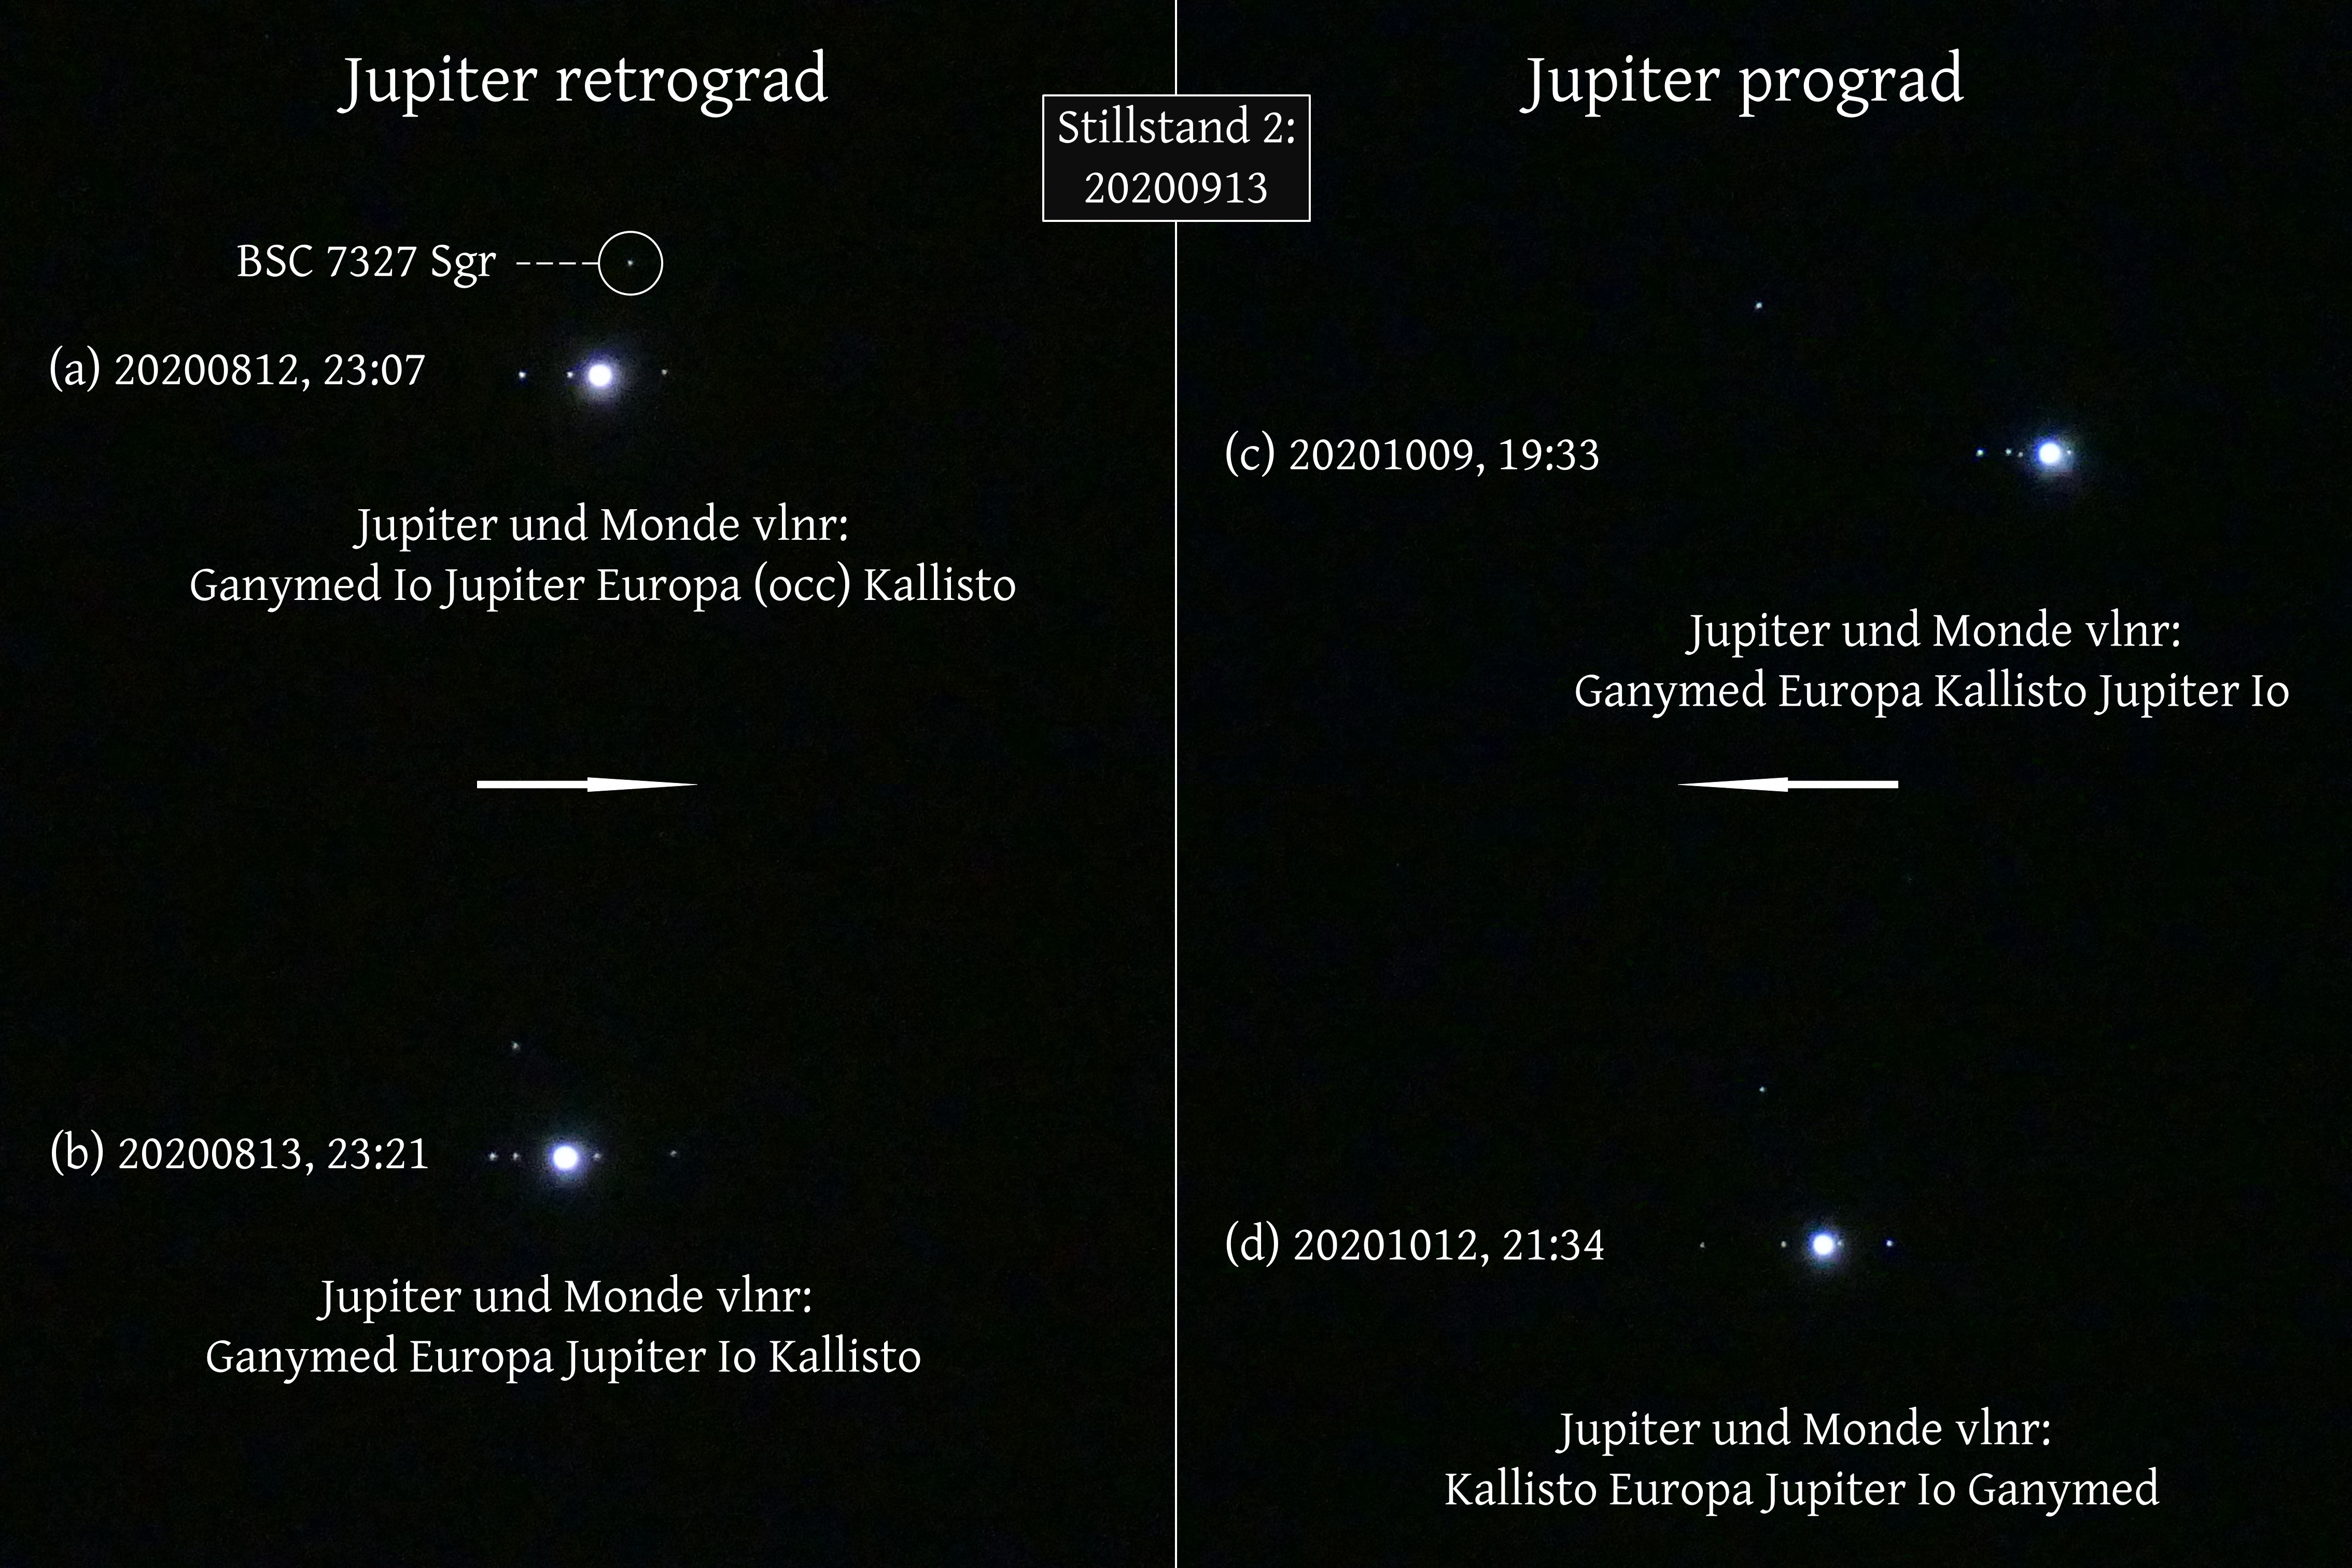 Abb. 4: Vier Bilder (a-d), die die Veränderung der Jupiterposition vor dem Hintergrundstern BSC 7327 Sgr vor (a+b) und nach (c+d) dem Stillstand 2 der Jupiterschleife am 13.9.20 zeigen.